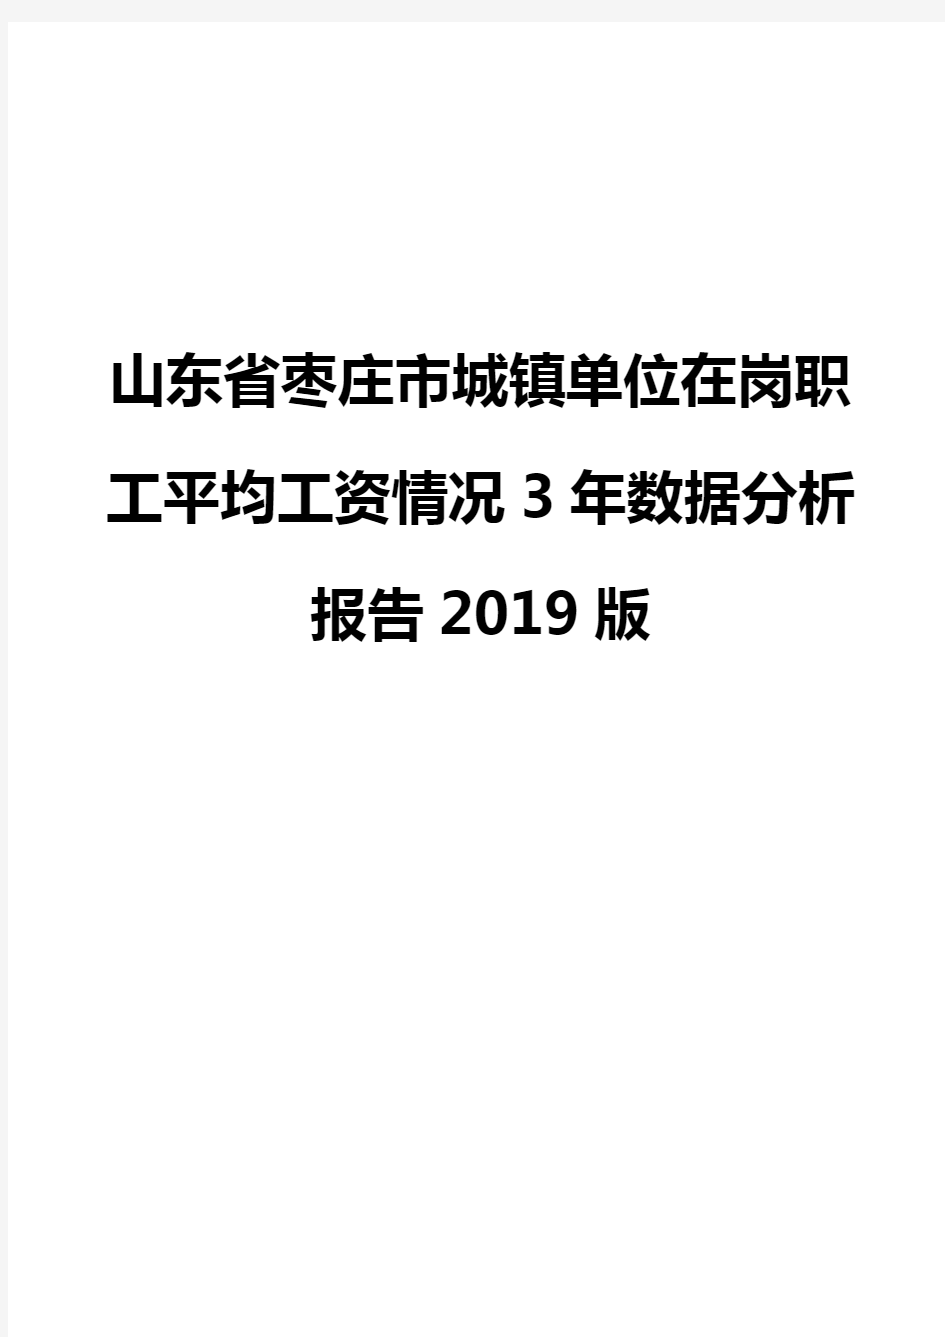 山东省枣庄市城镇单位在岗职工平均工资情况3年数据分析报告2019版